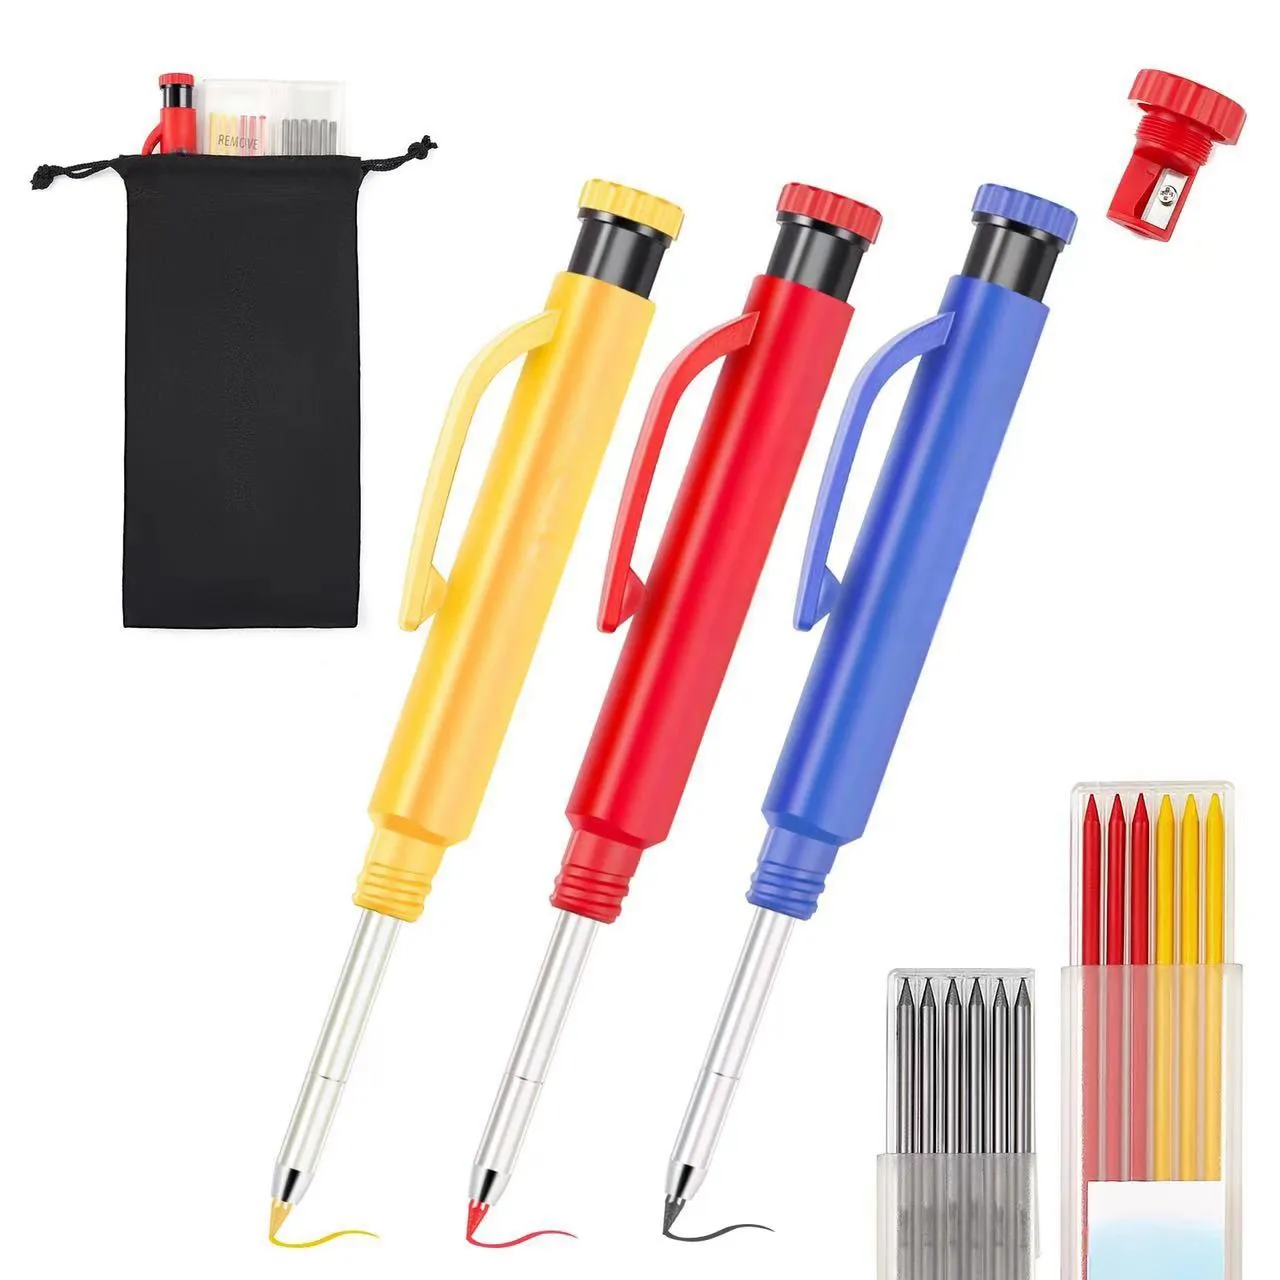 Caneta marcador multifuncional para ferramentas, caneta multiferramenta personalizada de 6,1 polegadas, fornecida pelo fabricante